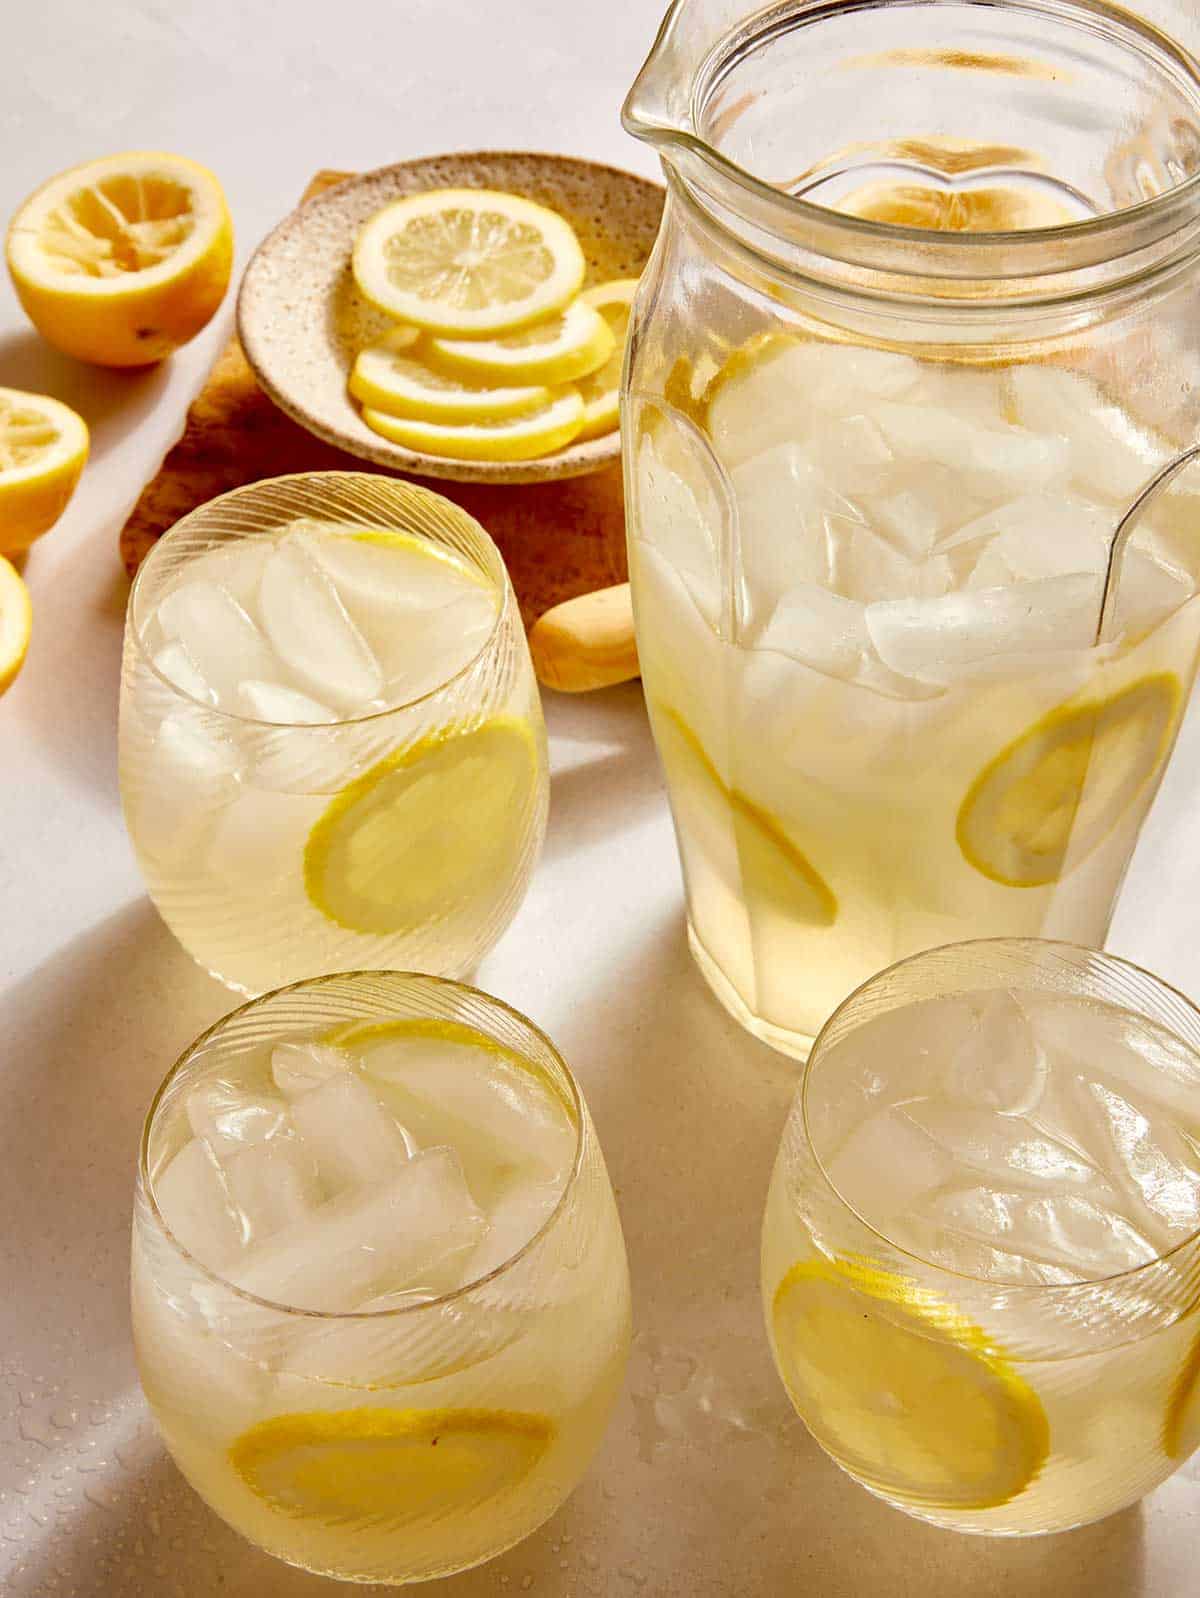 A classic lemonade recipe in a pitcher. 